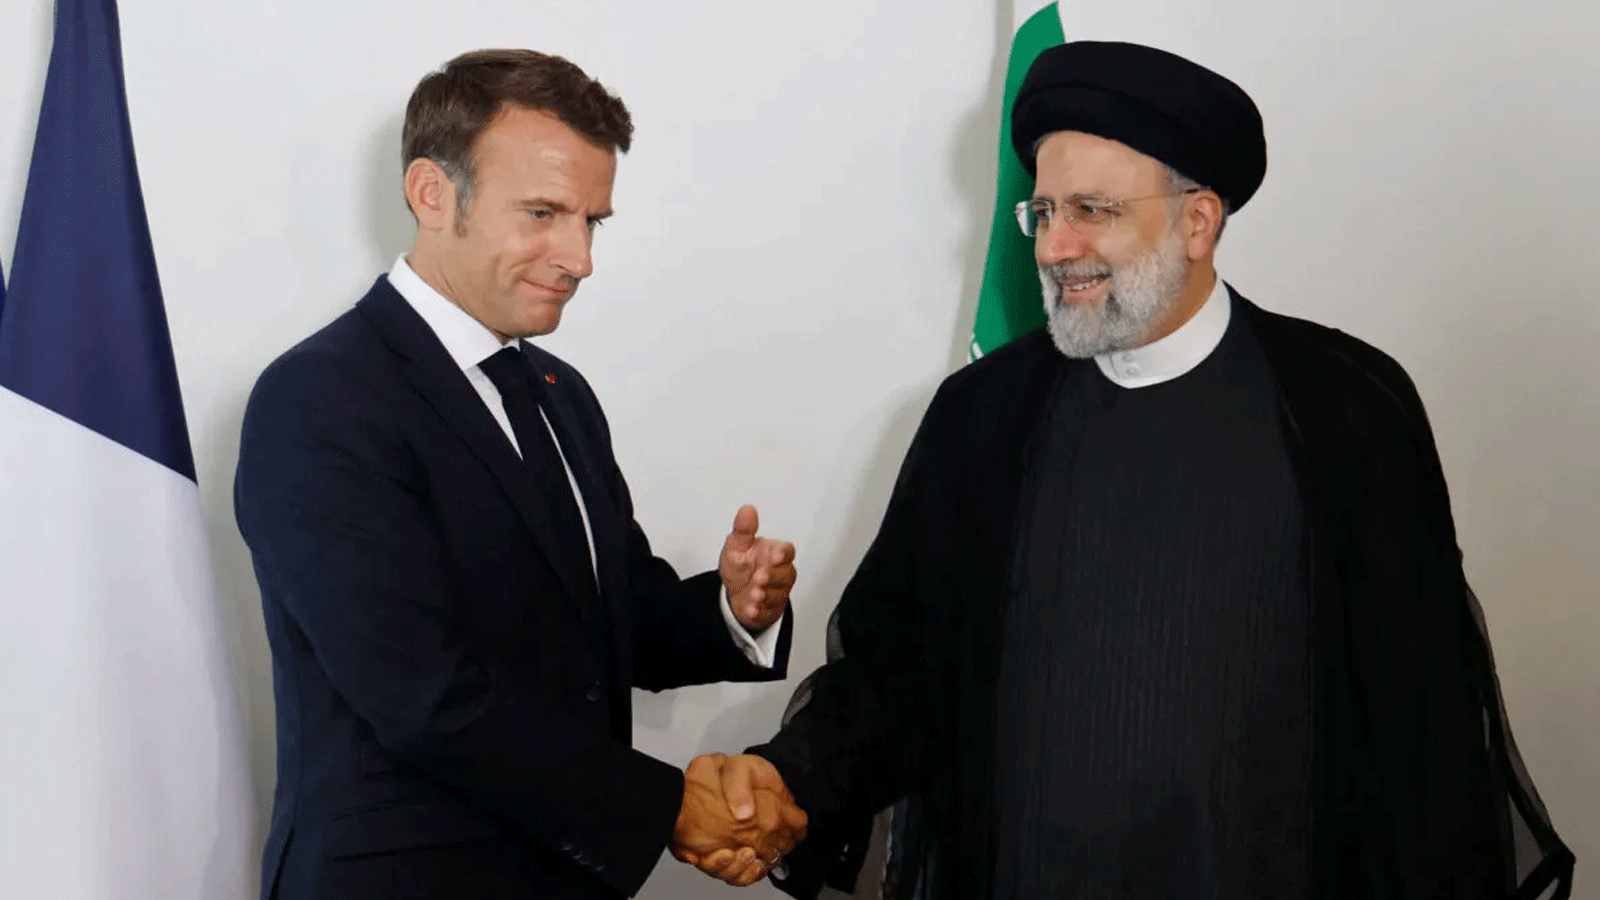 الرئيس الفرنسي إيمانويل ماكرون يعقد اجتماعاً ثنائياً مع الرئيس الإيراني إبراهيم رئيسي على هامش أعمال الدورة 77 للجمعية العامة للأمم المتحدة في مدينة نيويورك. 20 أيلول\ سبتمبر 2022